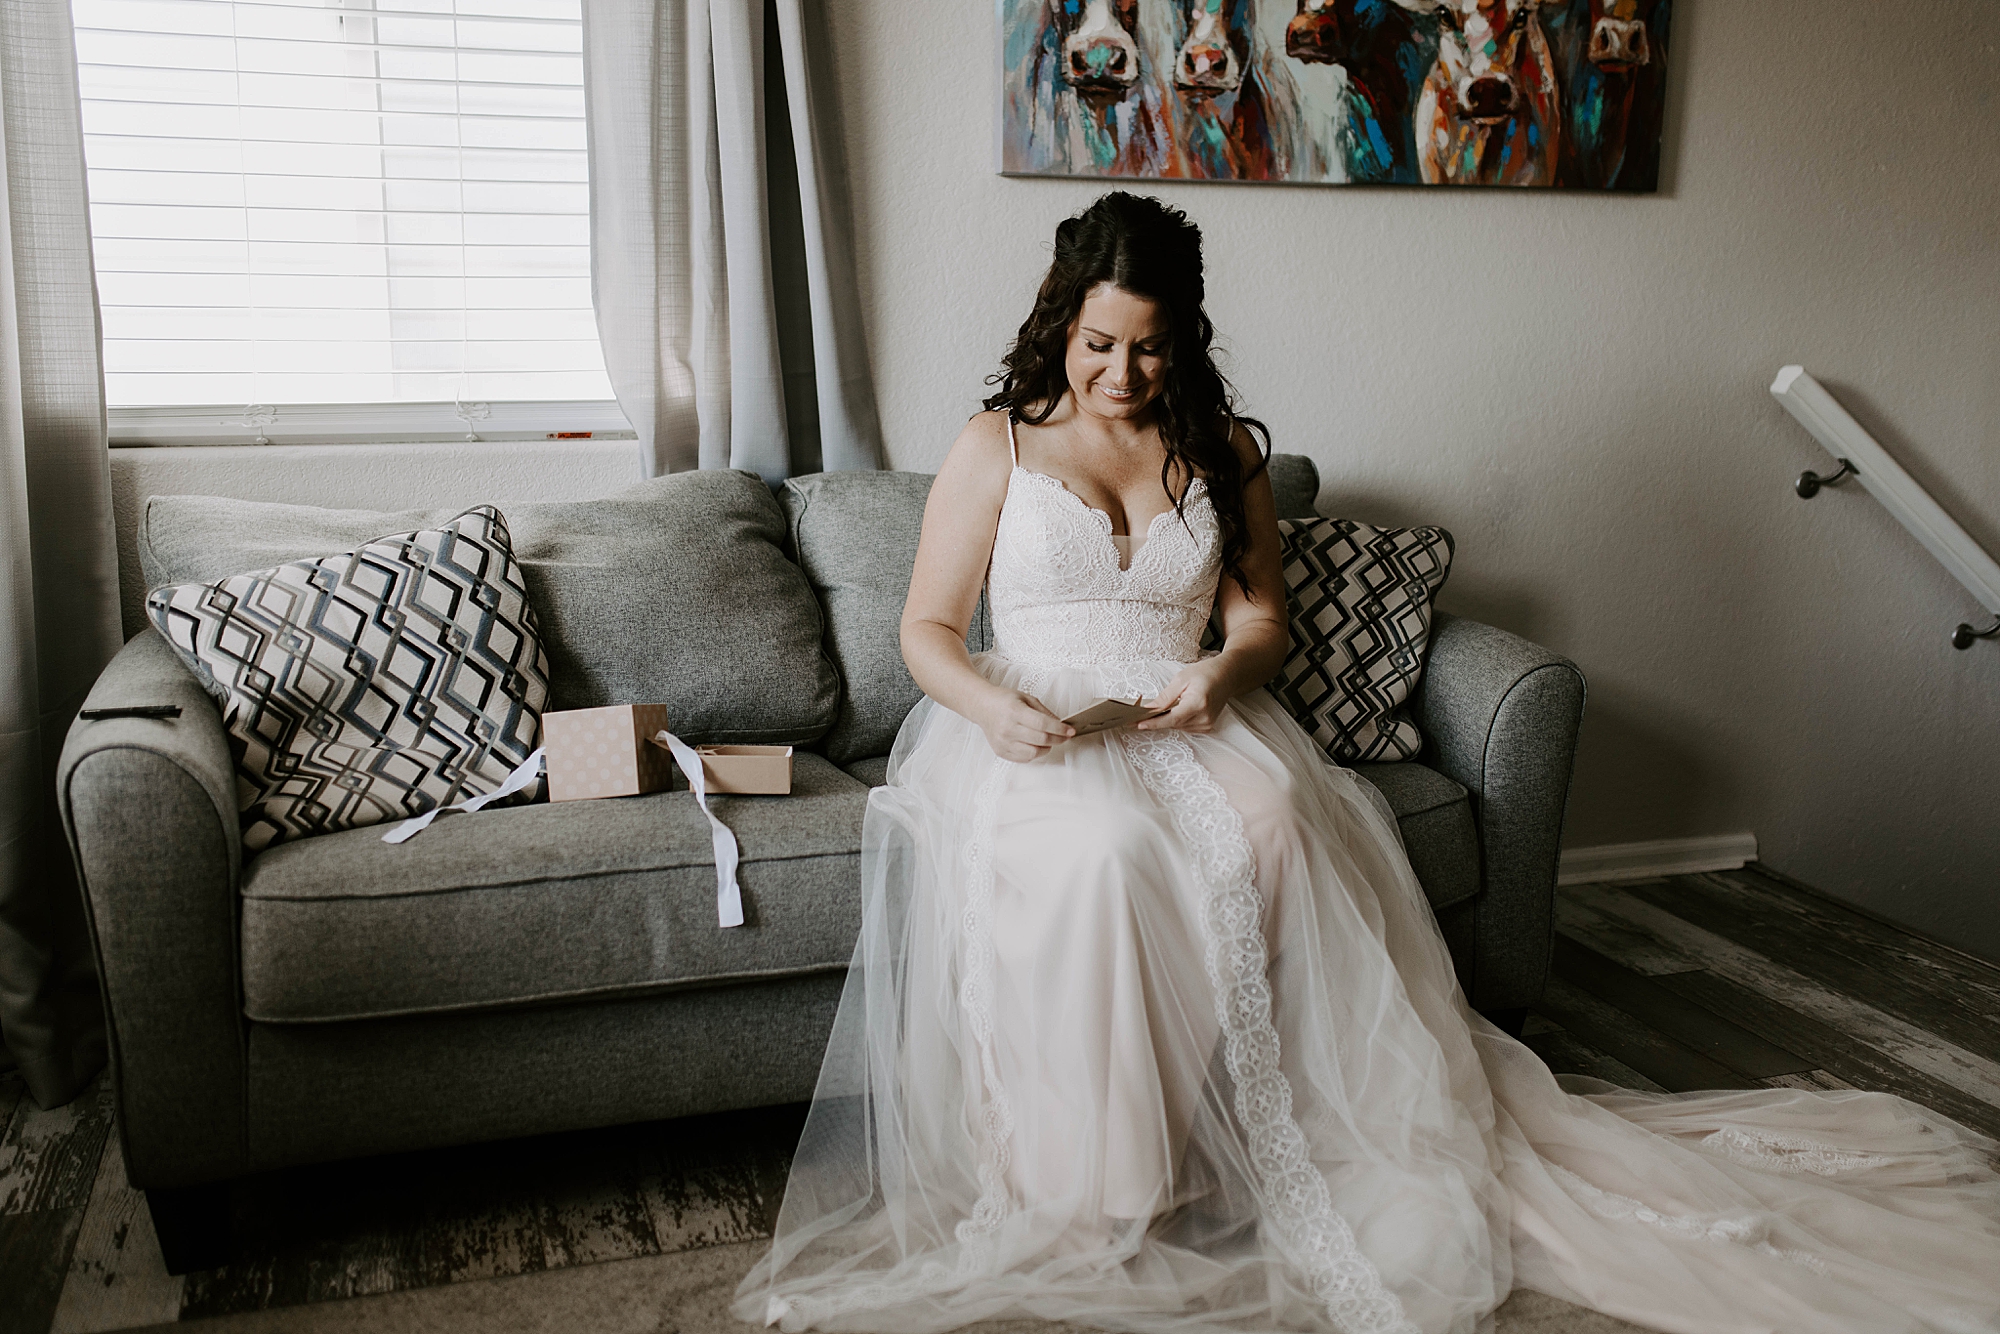 Colorado Springs wedding photographer, Mariah Treiber Photography